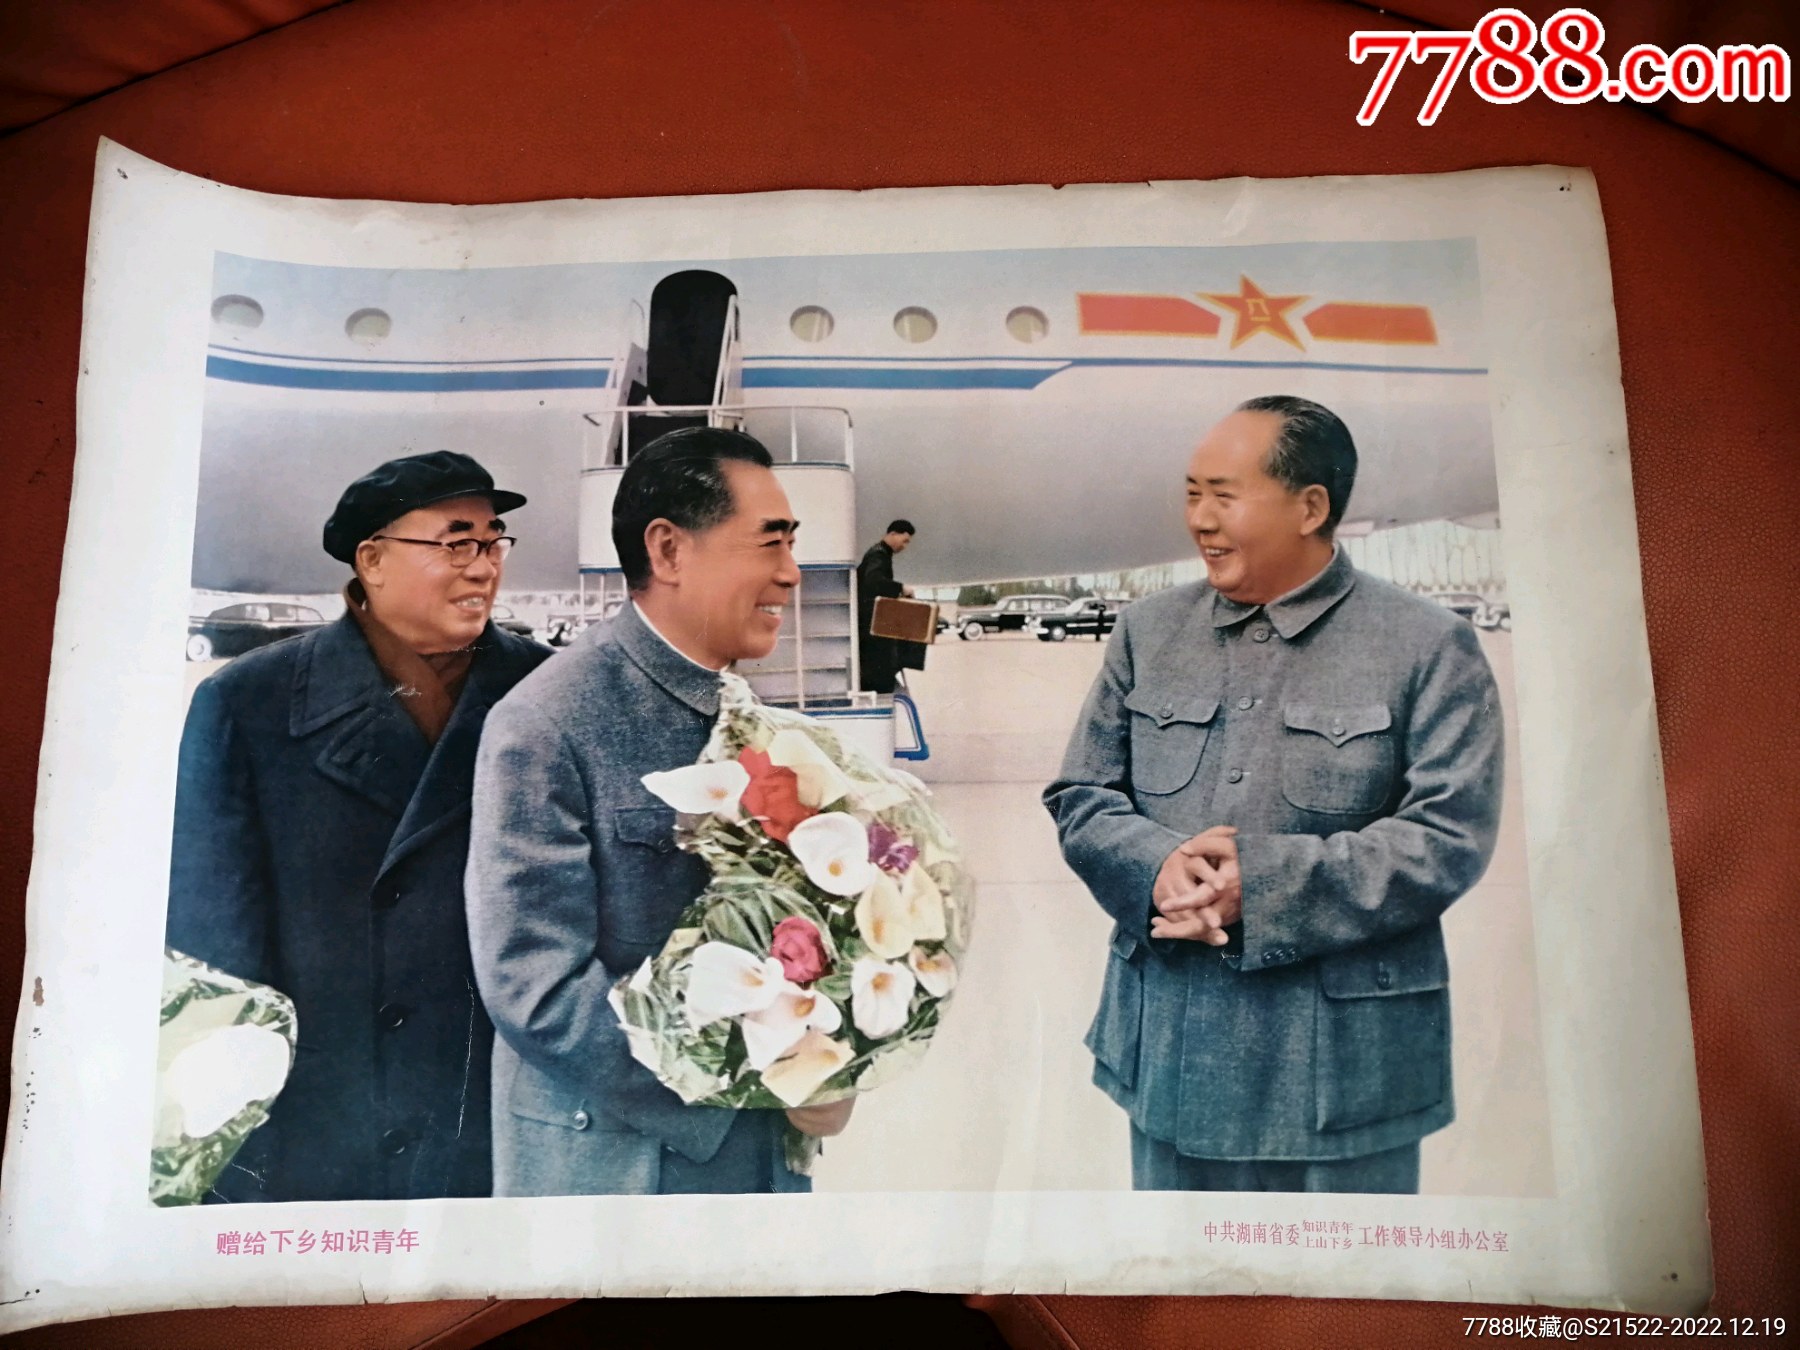 毛泽东和周恩来的“最后”握手照片探析 - 知乎